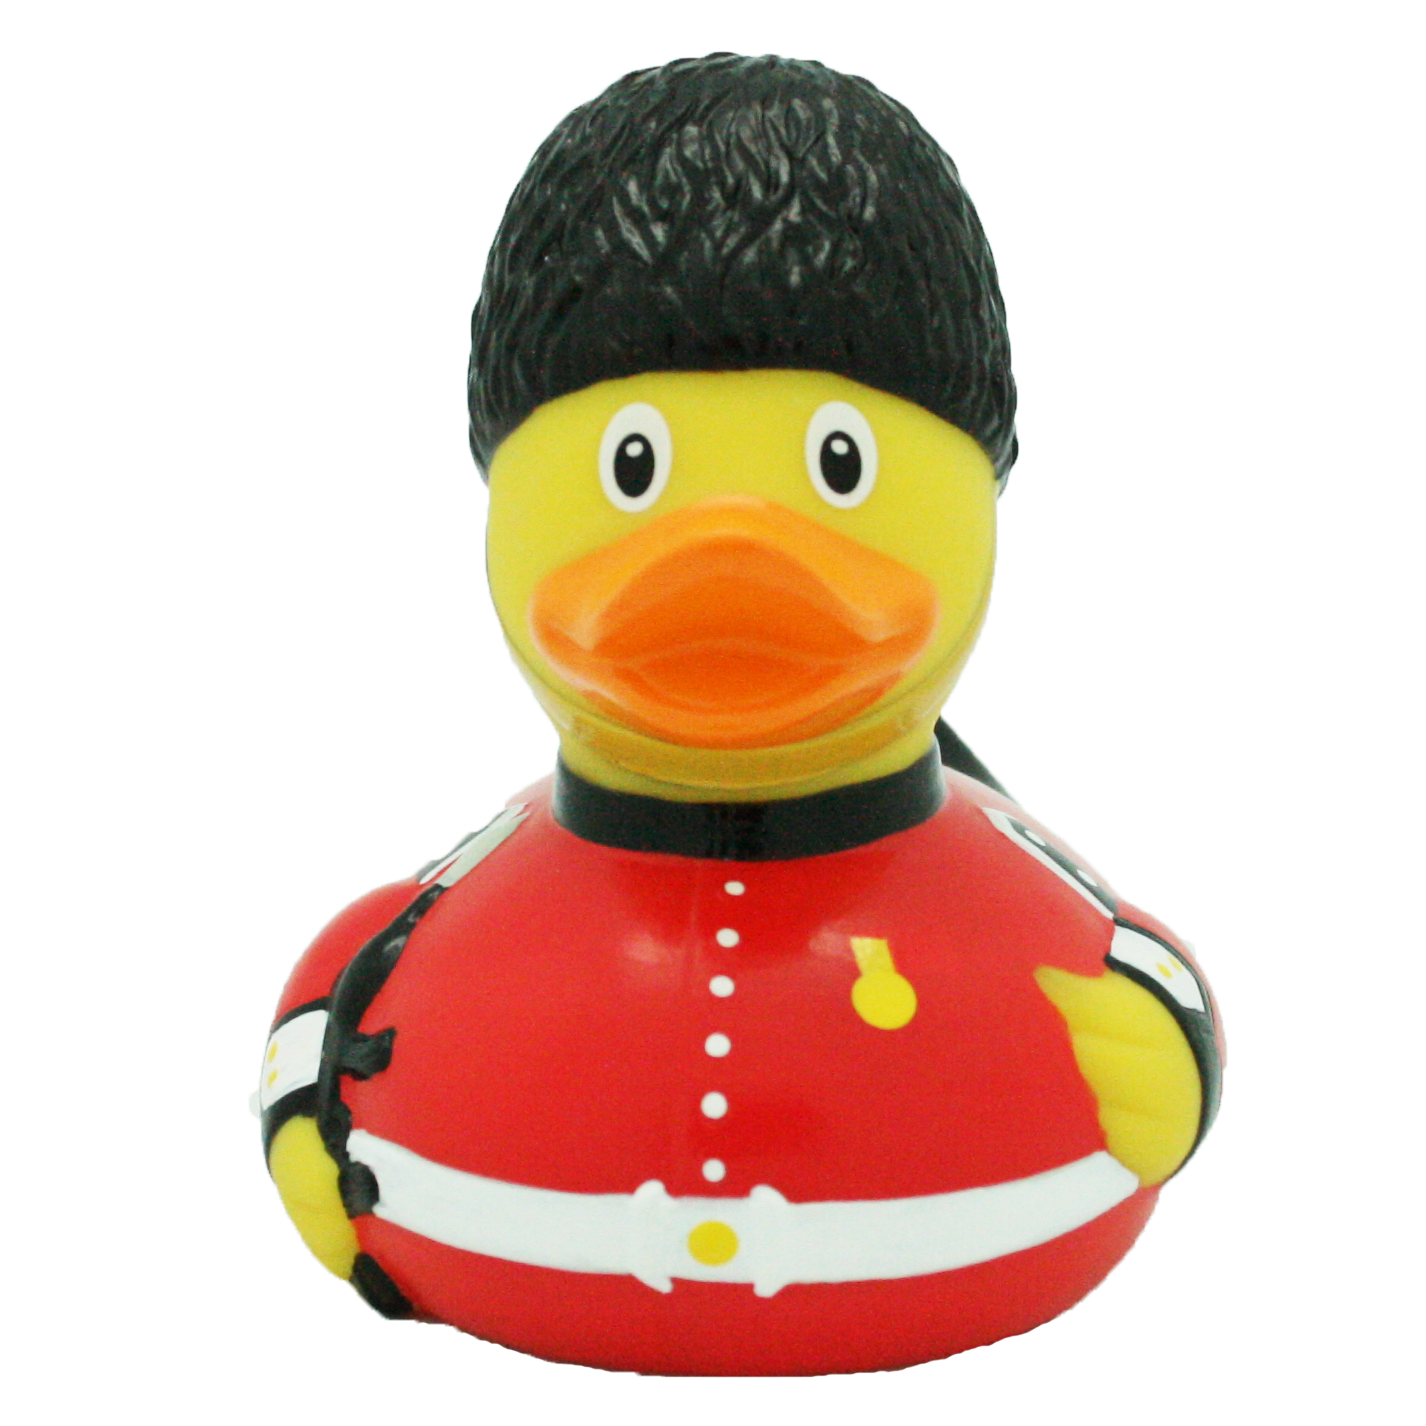 Duck Guard Royal.